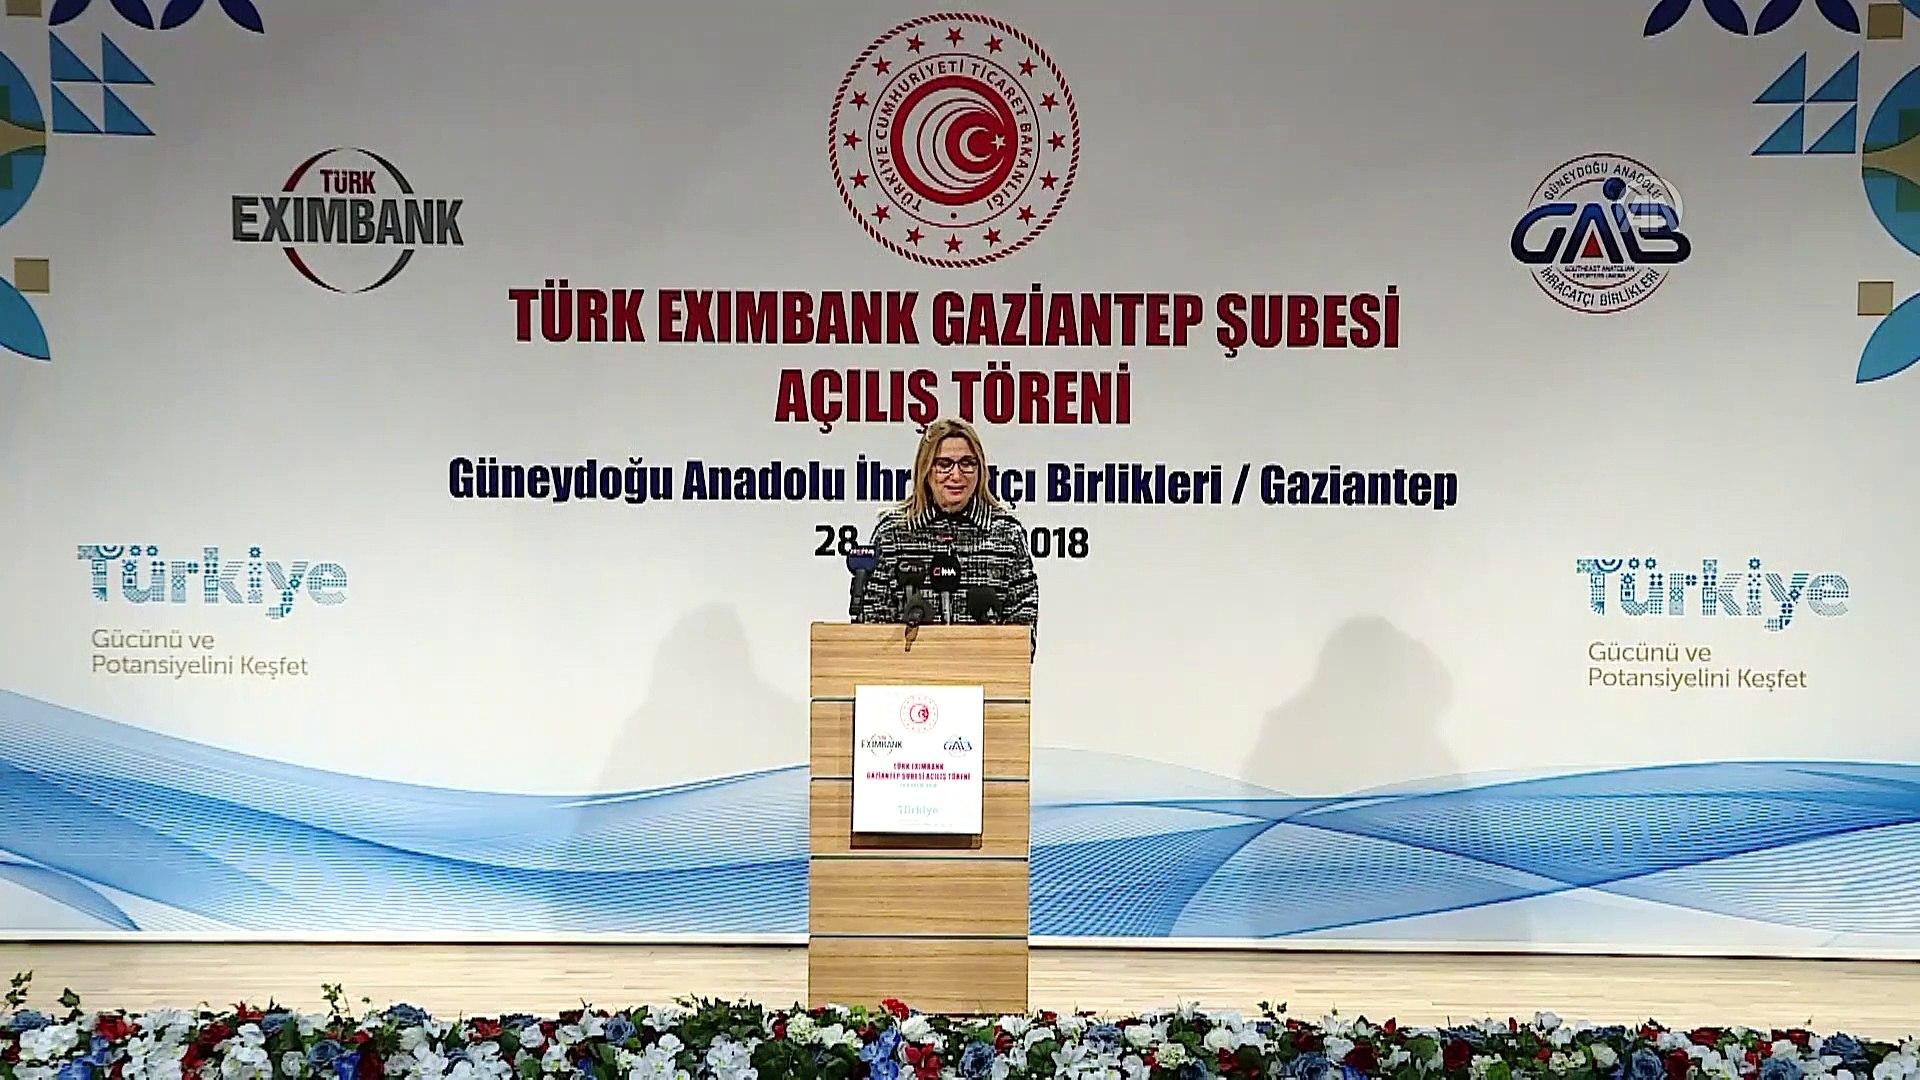 Ticaret Bakanı Ruhsar Pekcan Türk Eximbank Gaziantep Şubesi açılışına katıldı.